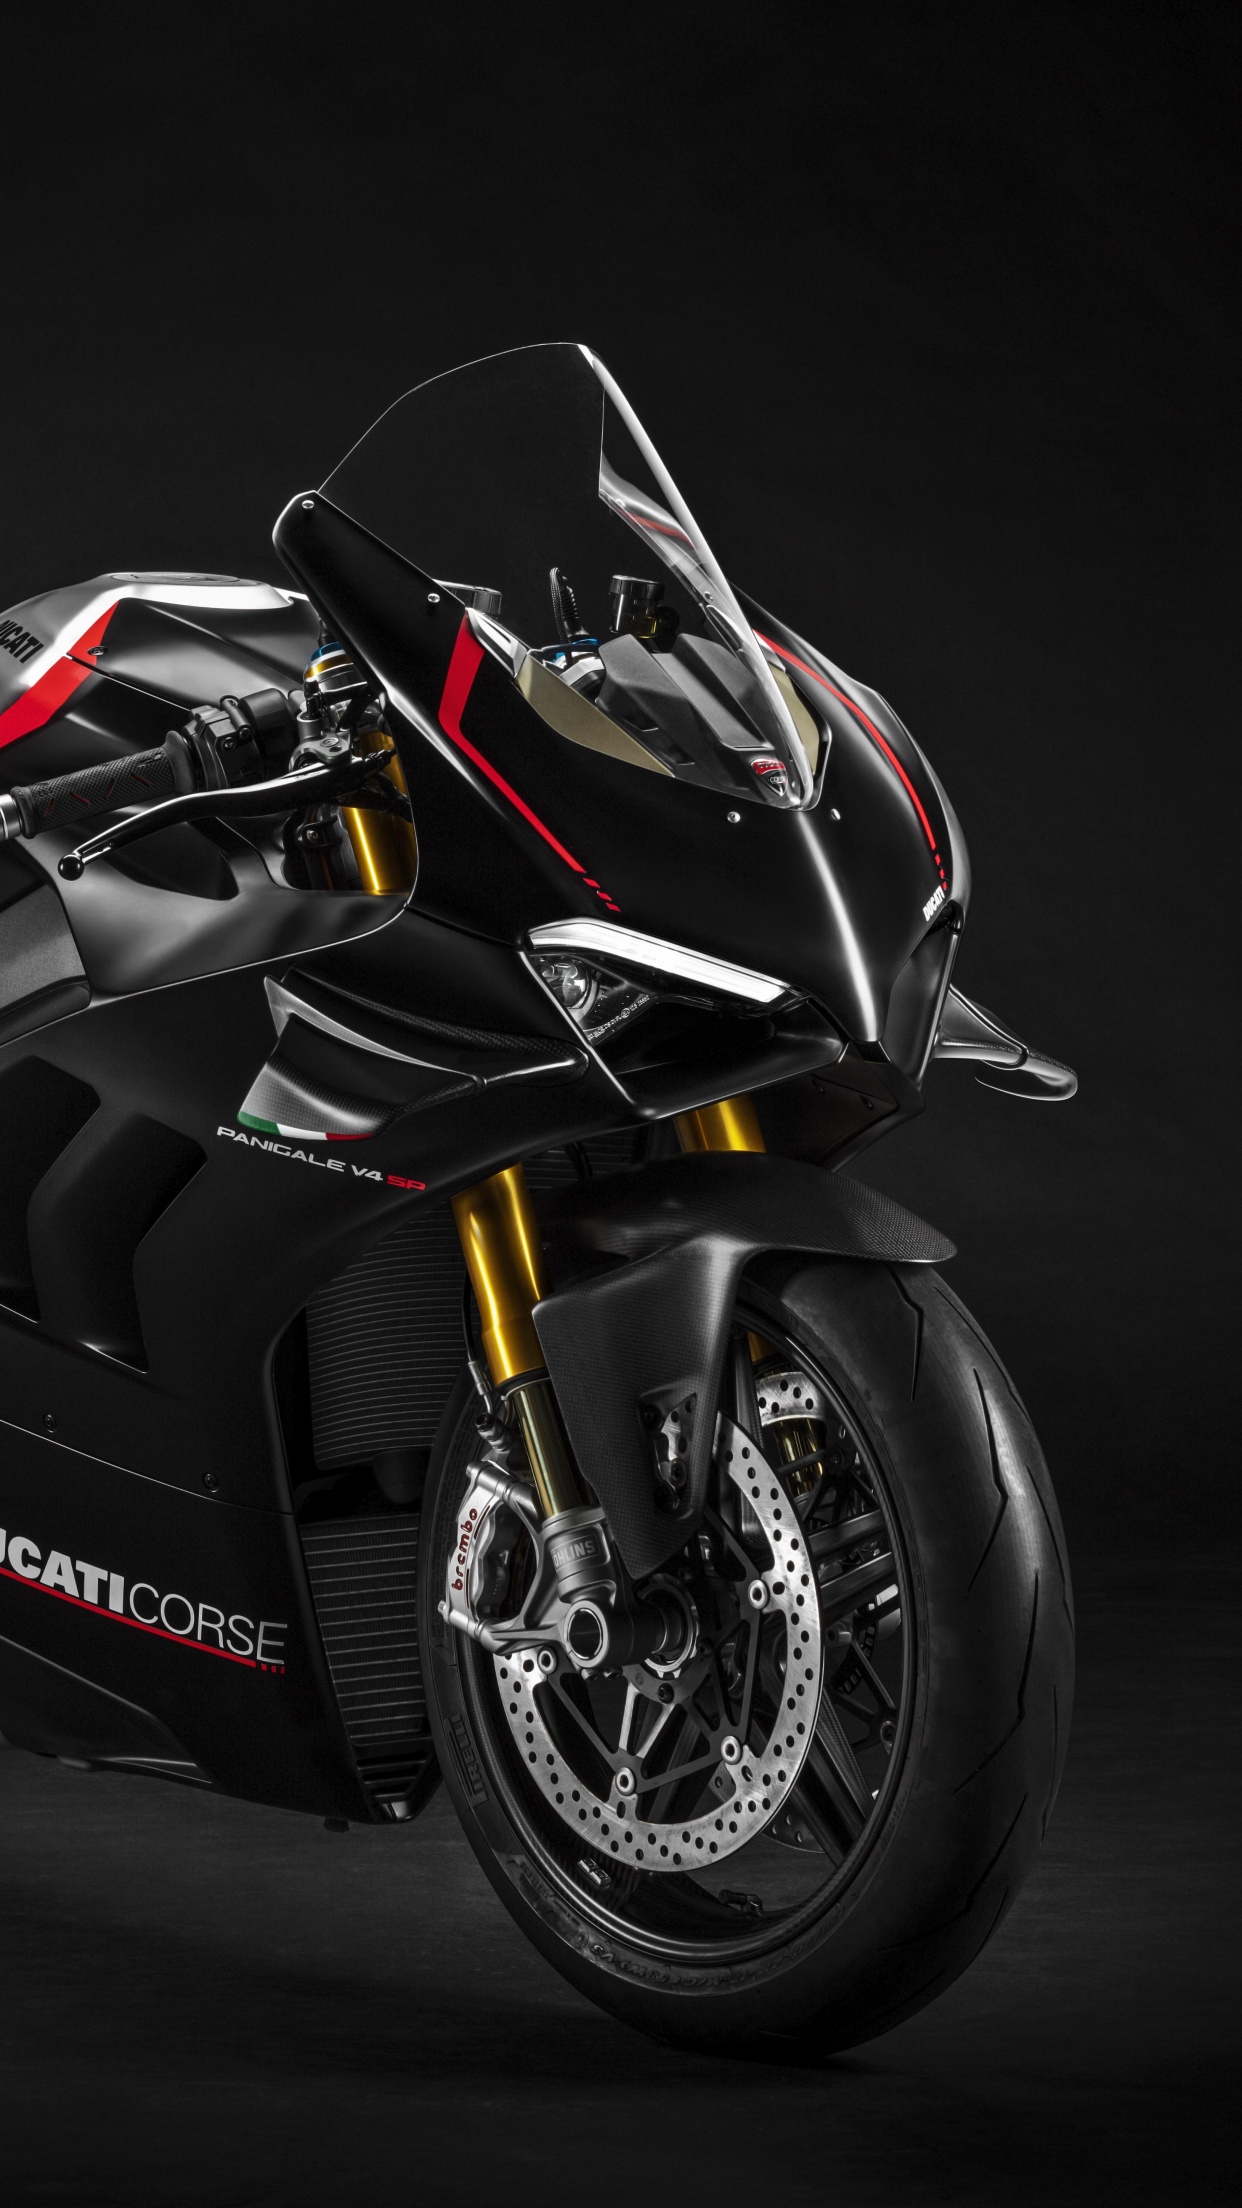 Ducati Panigale V4 SP Wallpaper 4K, 2021, Dark background, Black/Dark, #3377